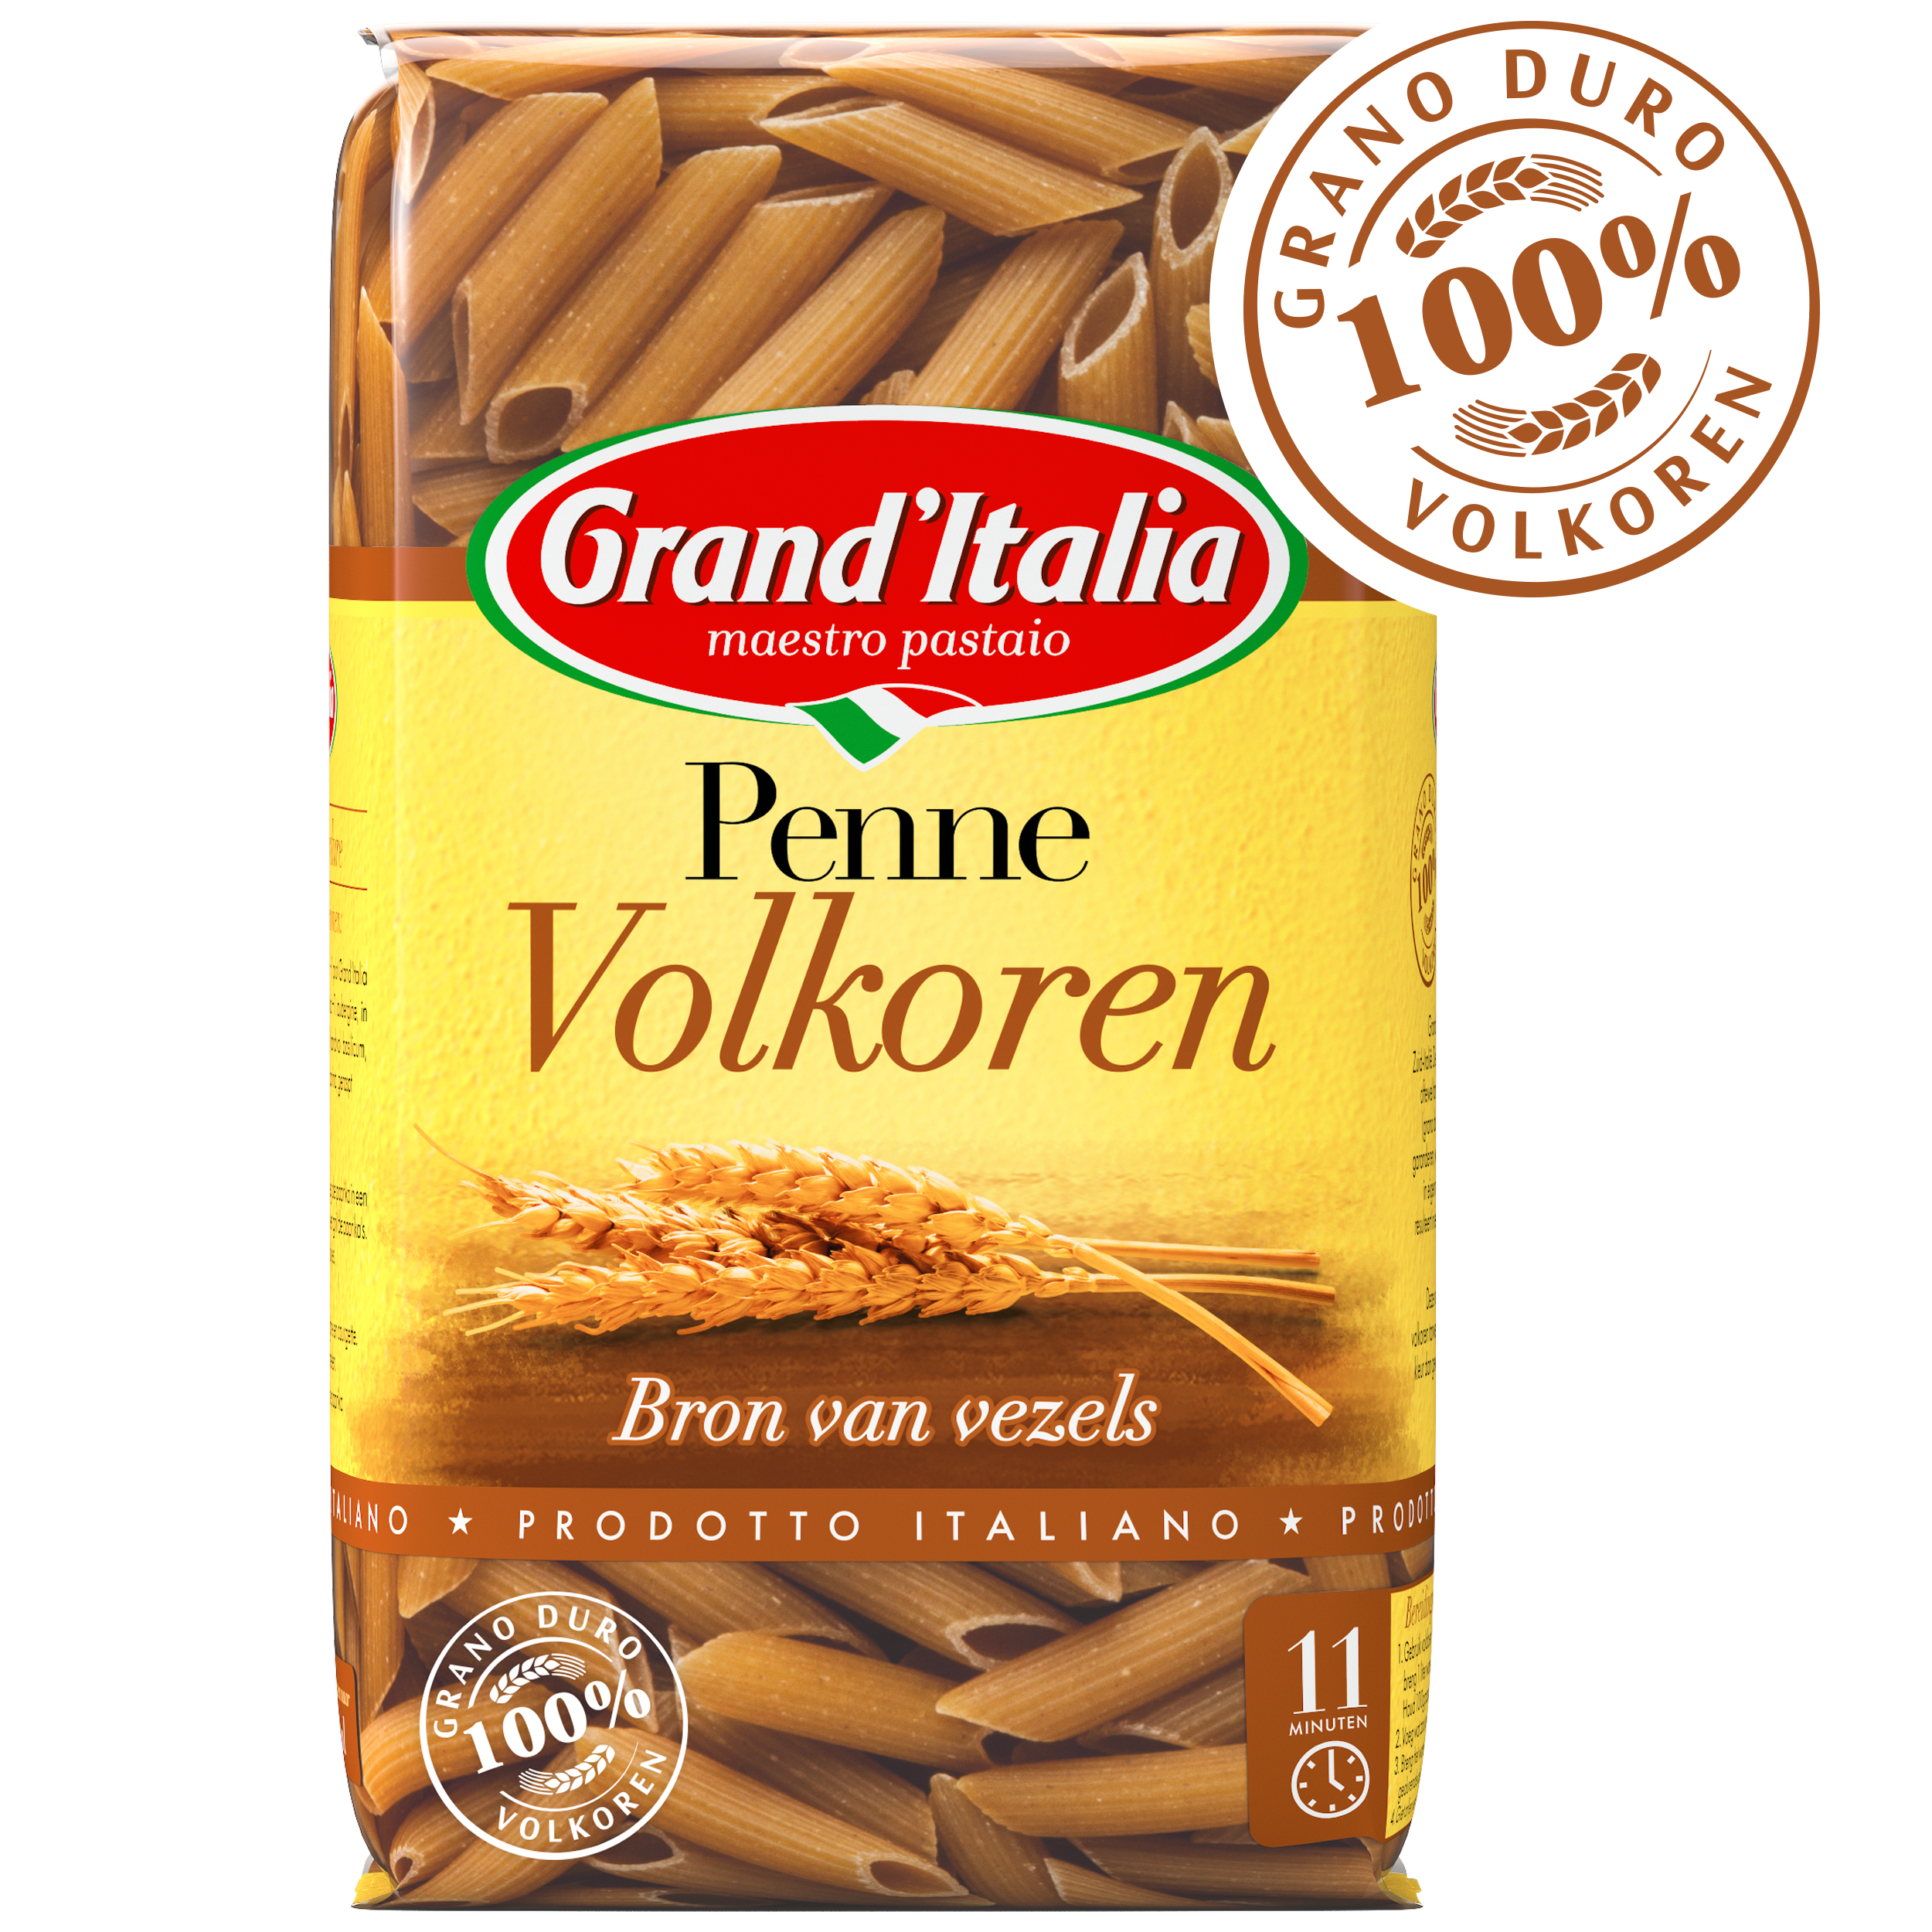 Pasta Penne Volkoren 500g claim Grand'Italia